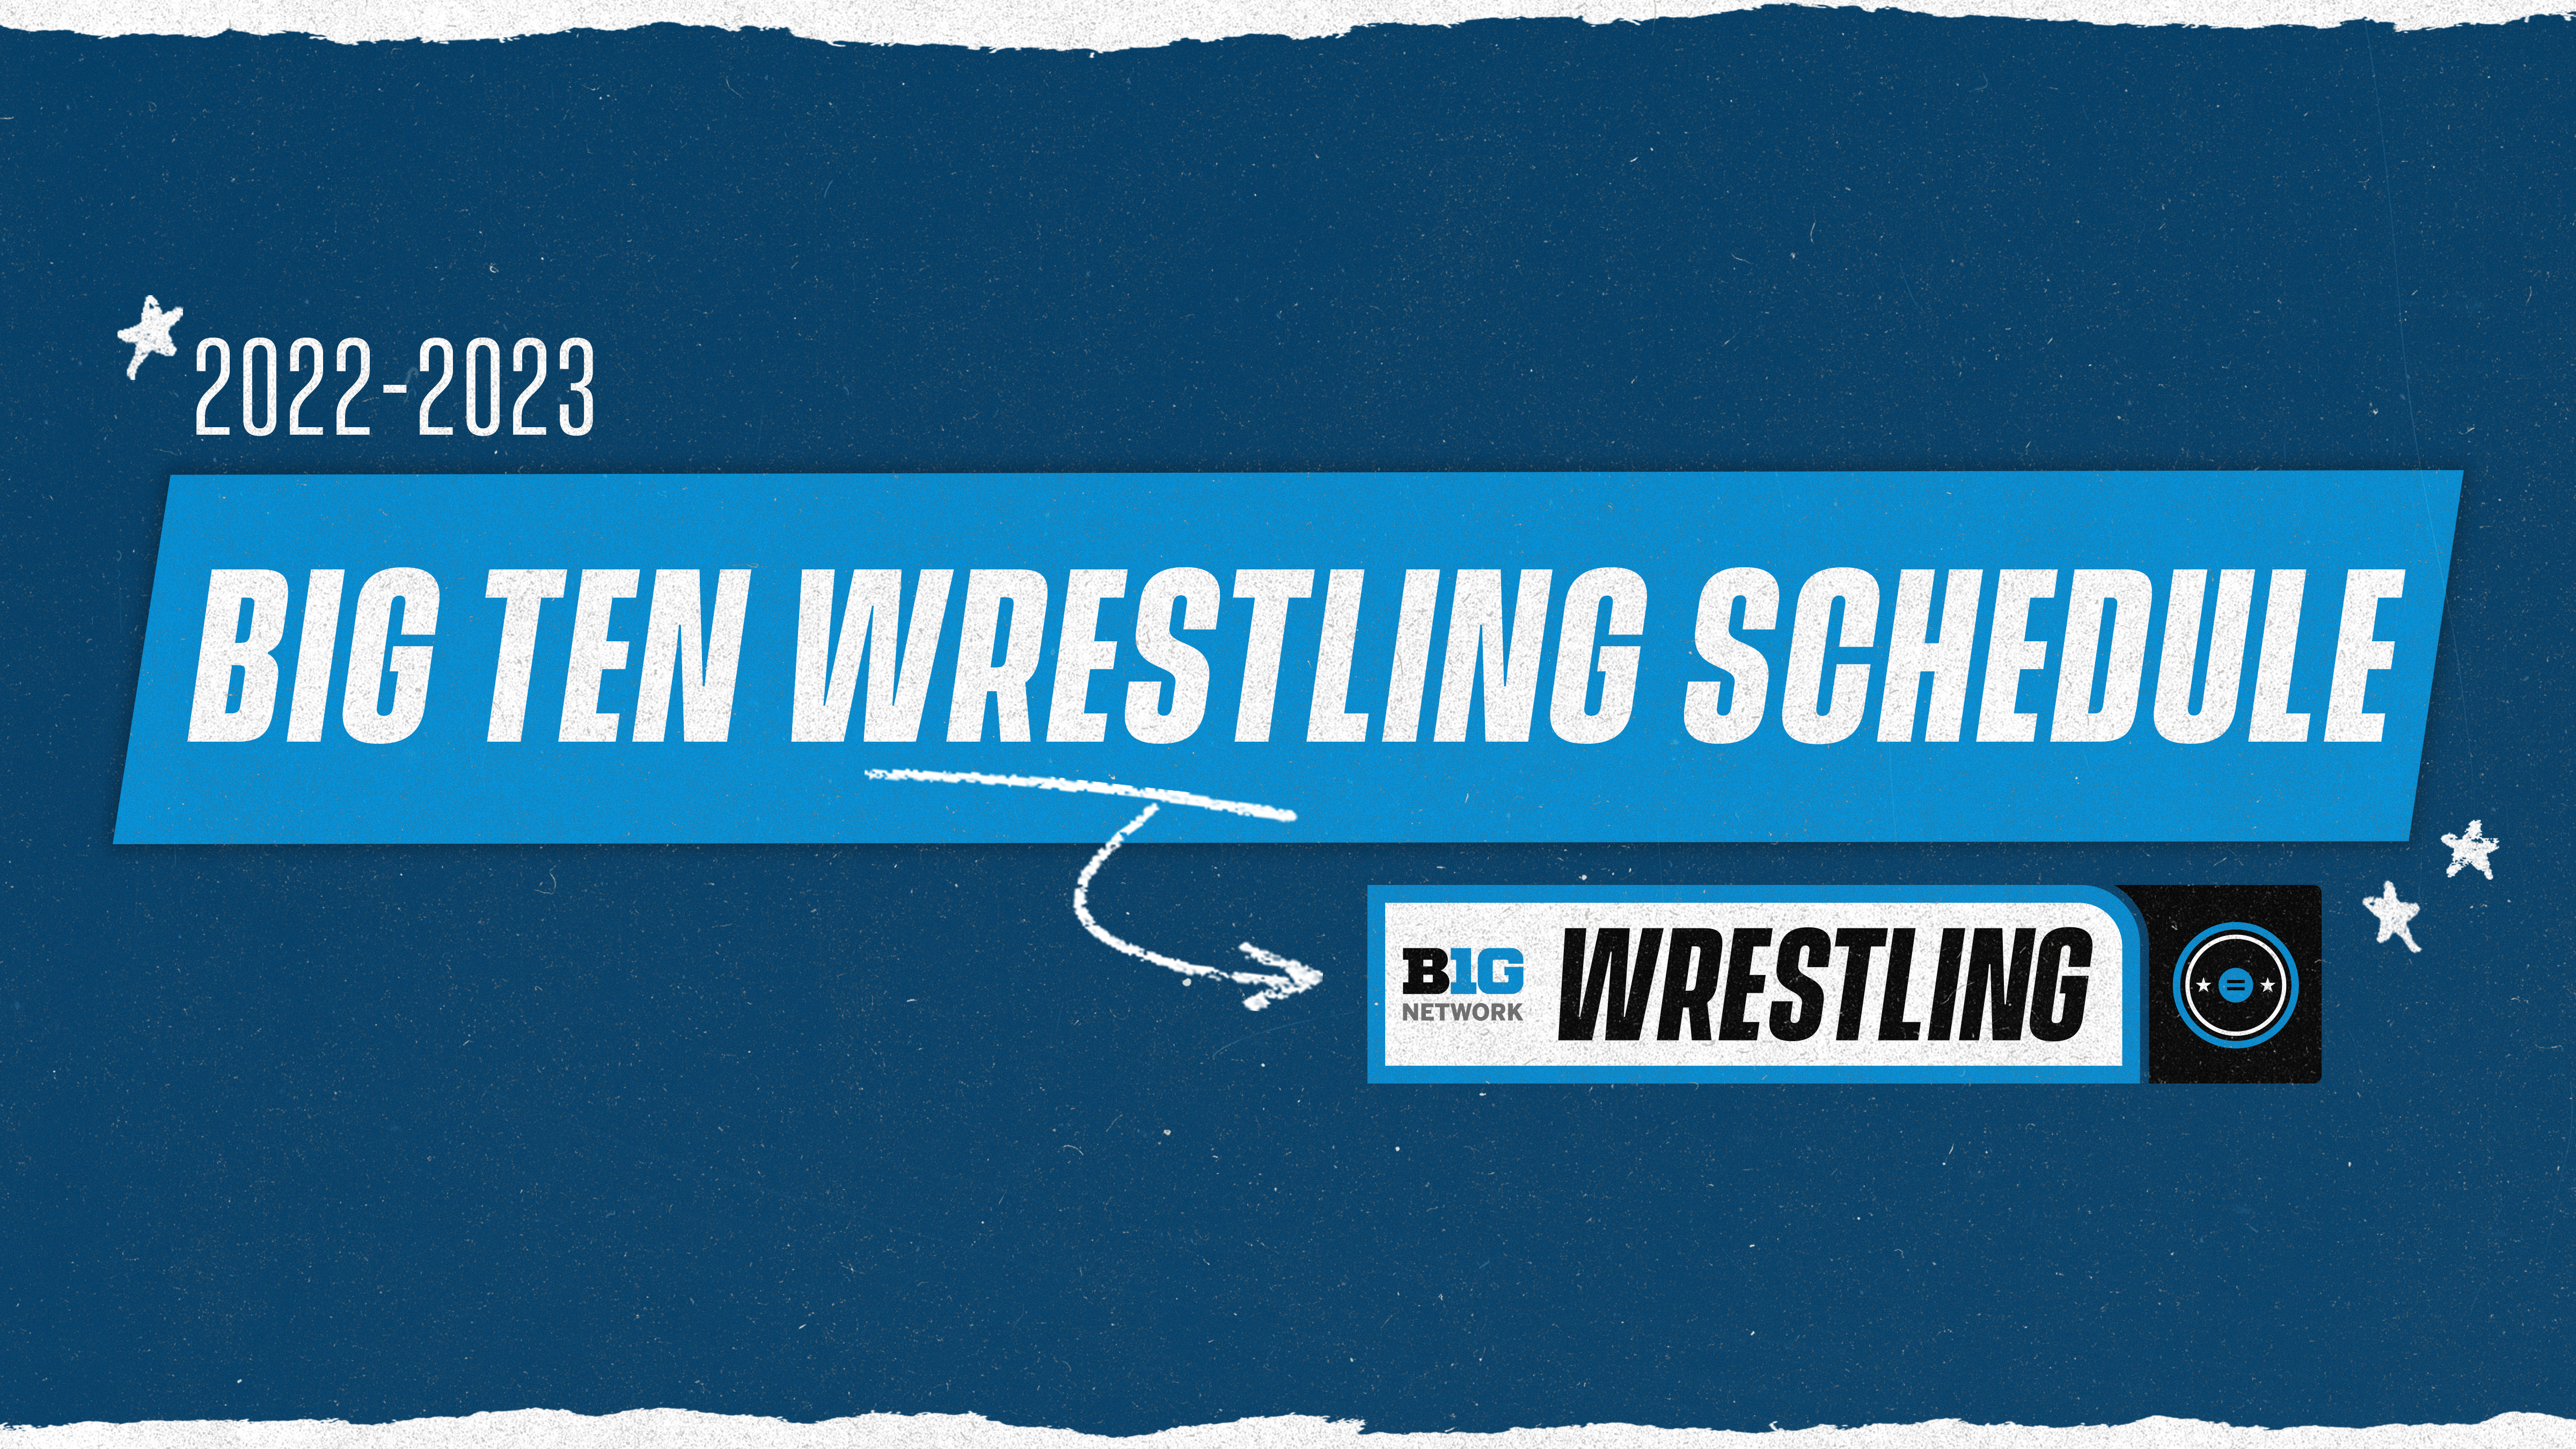 Big Ten Network Announces 2022-23 Big Ten Wrestling Schedule